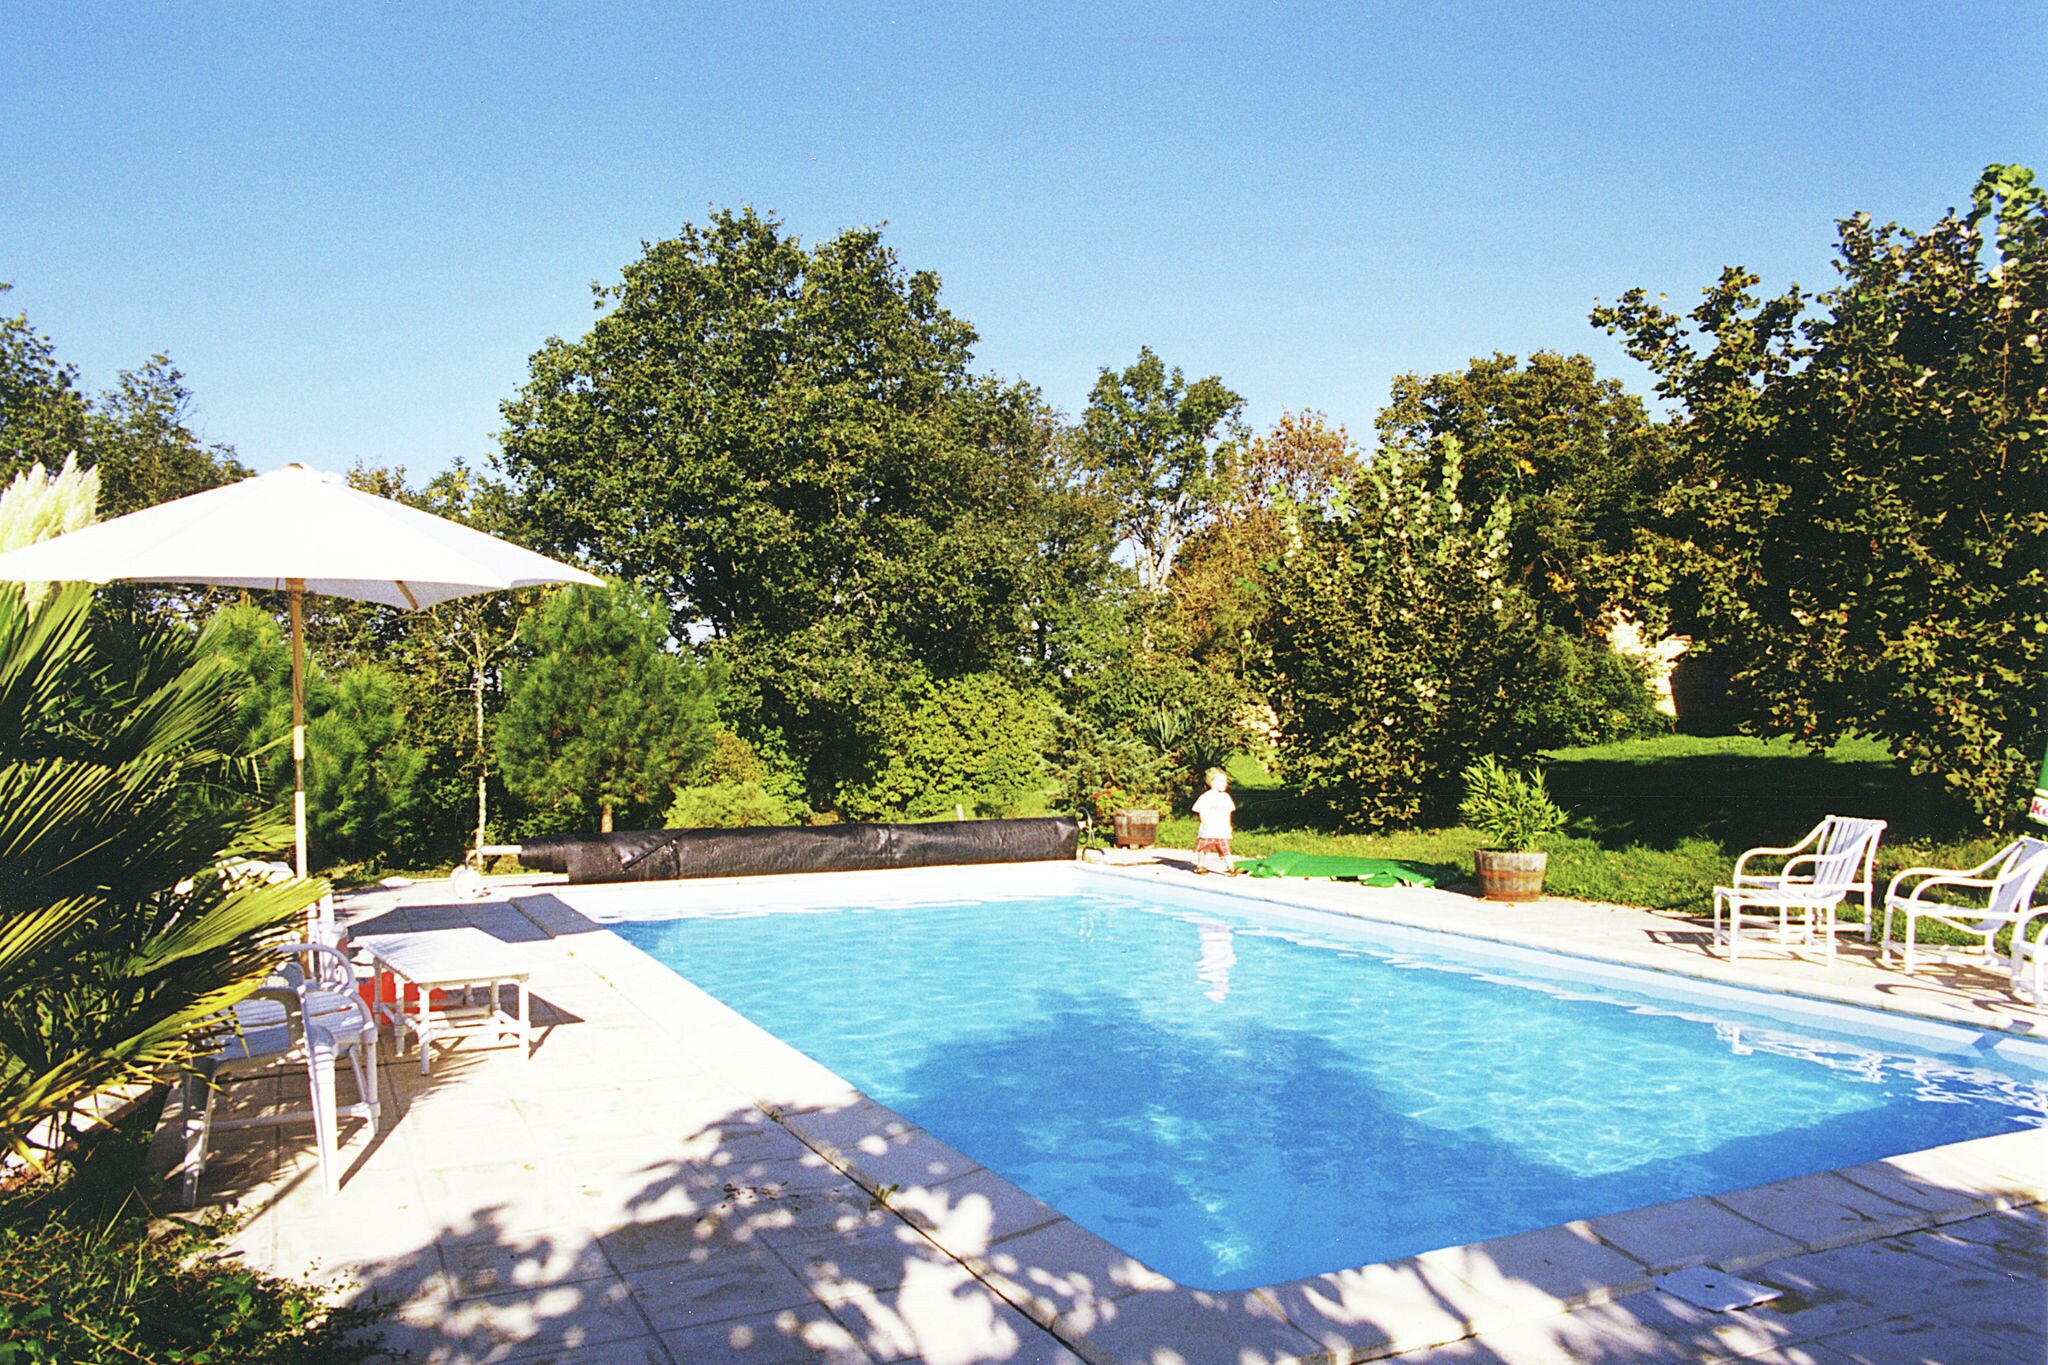 Vakantiehuis met airco en privézwembad in bosrijke omgeving.